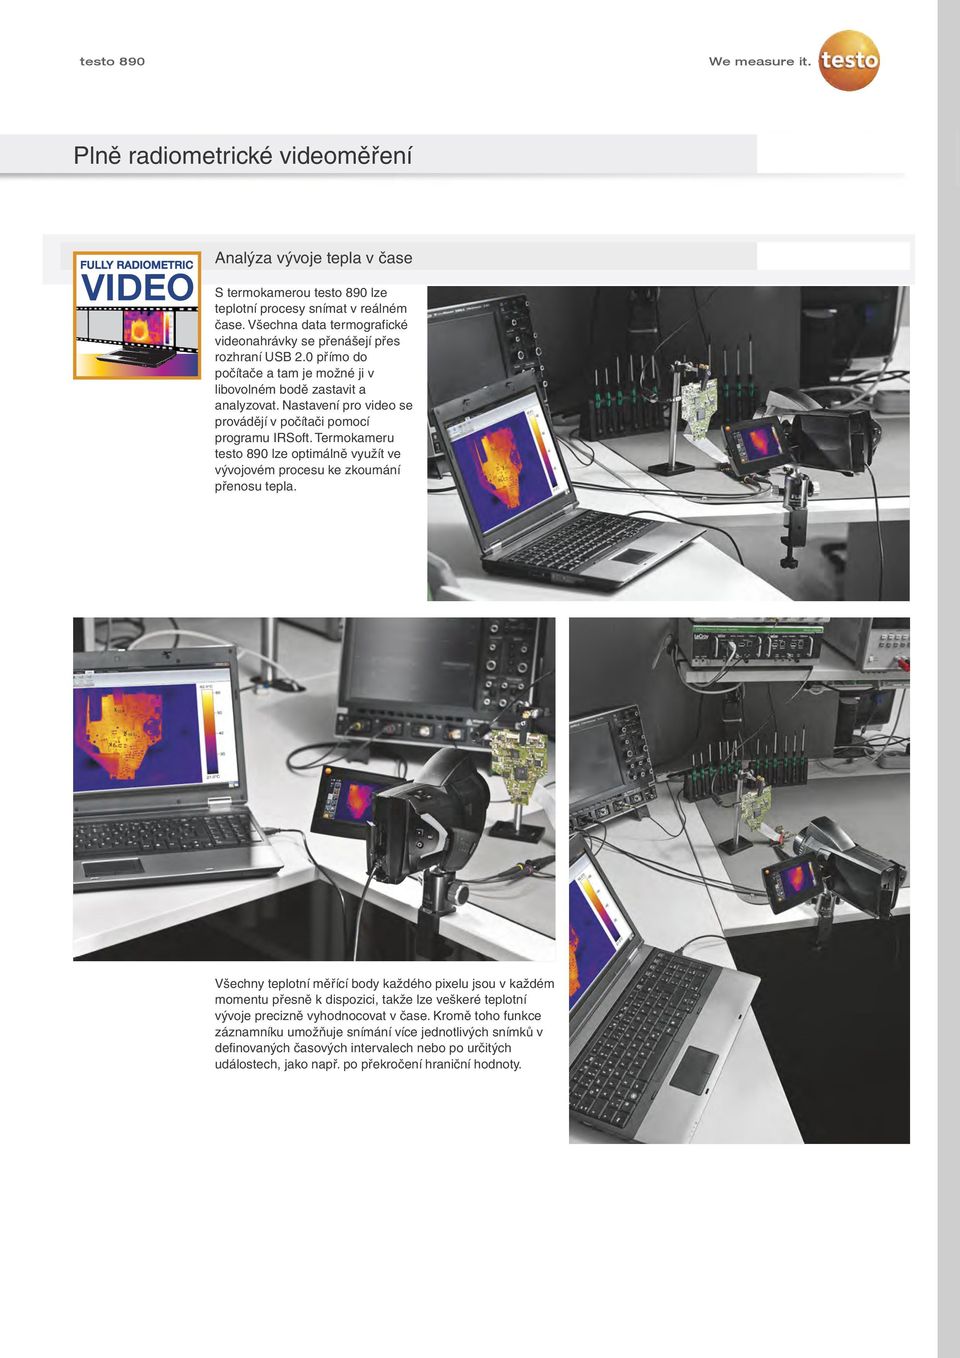 Nastavení pro video se provádějí v počítači pomocí programu IRSoft. Termokameru testo 890 lze optimálně využít ve vývojovém procesu ke zkoumání přenosu tepla.